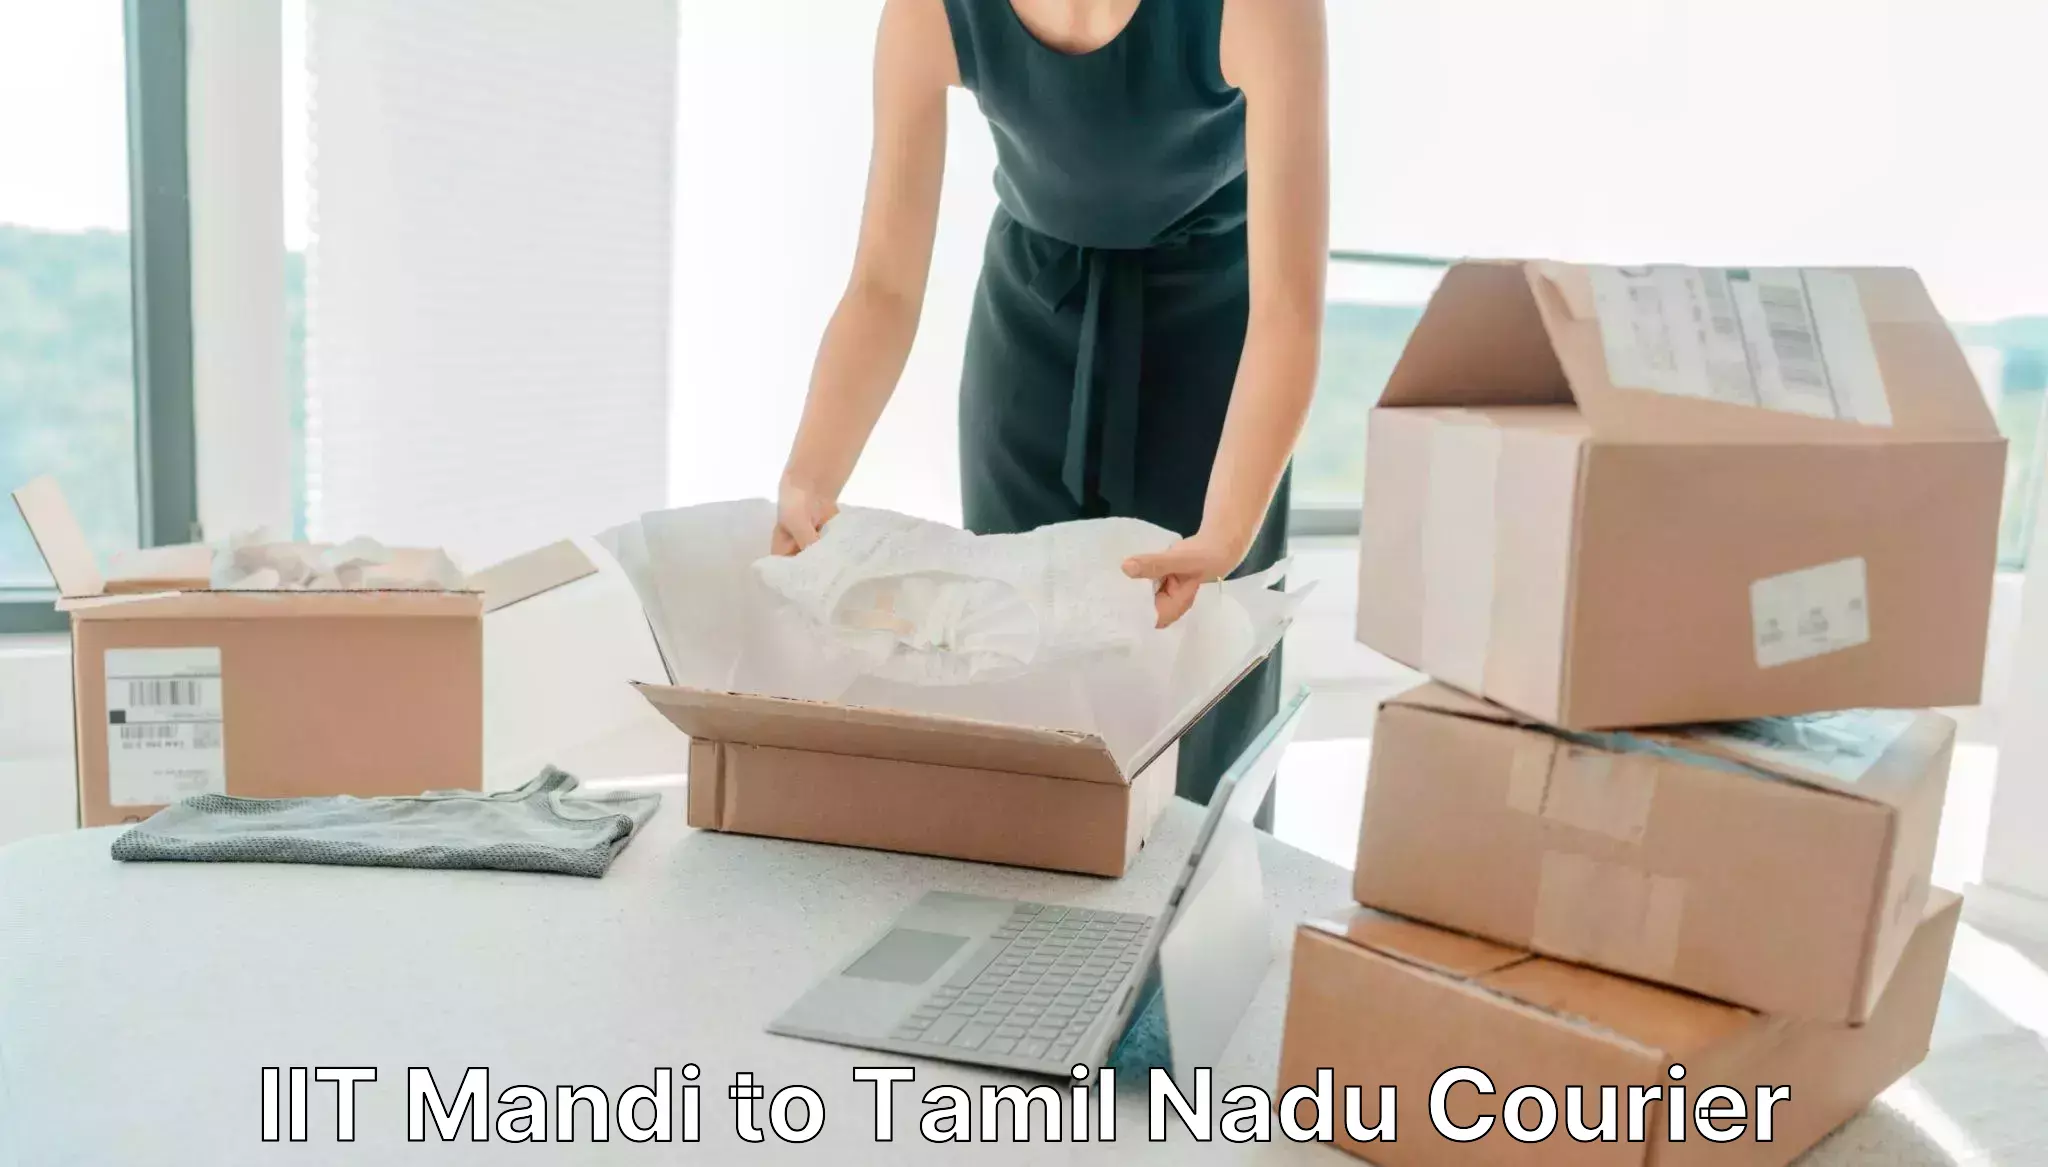 Professional courier handling IIT Mandi to Chengam